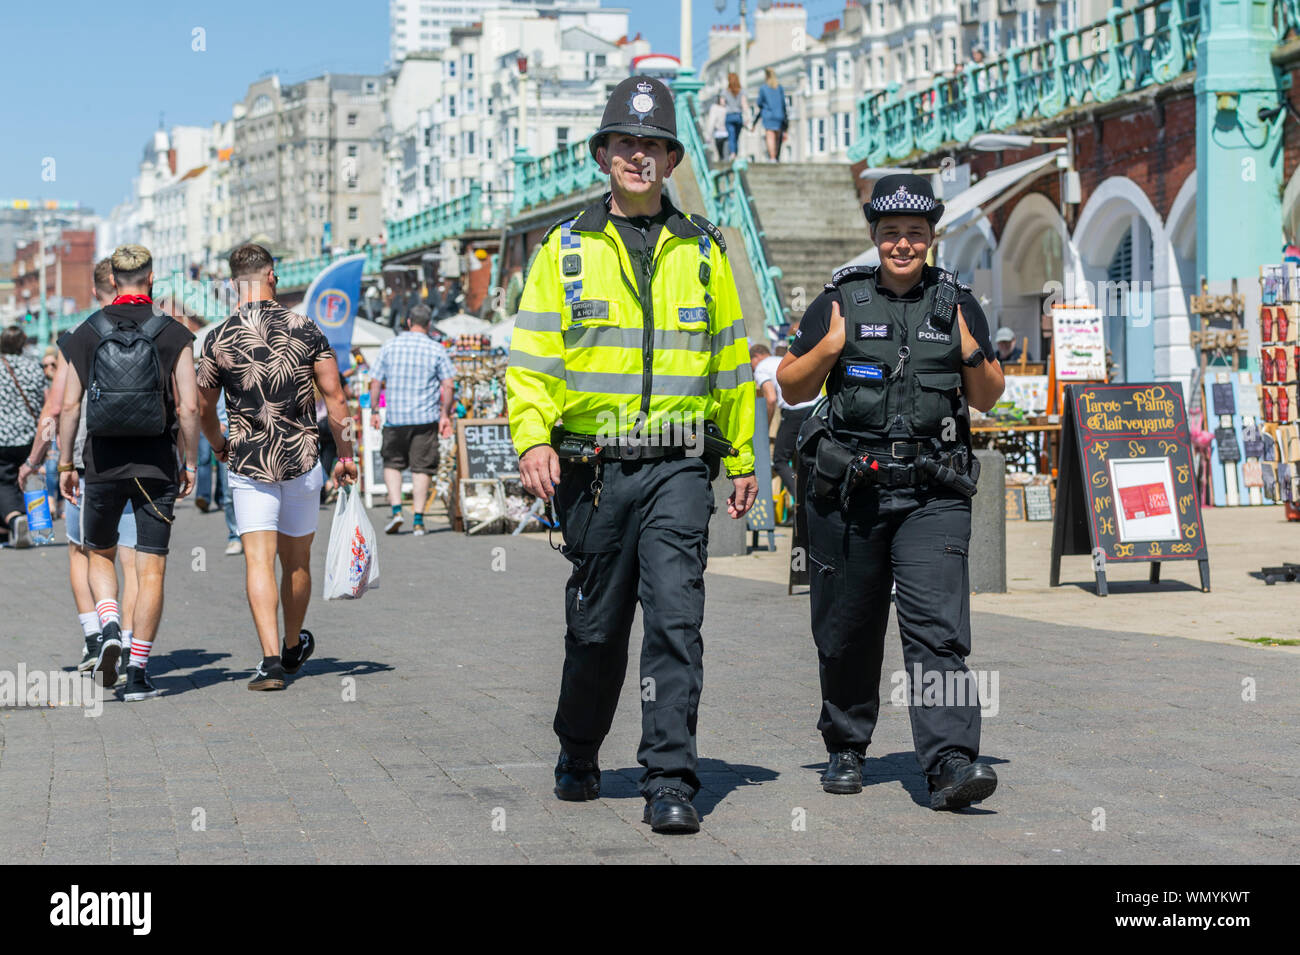 La présence de la police. La patrouille policière de la promenade du bord de mer en été à Brighton, East Sussex, Angleterre, Royaume-Uni. Patrouille de police à Brighton Banque D'Images